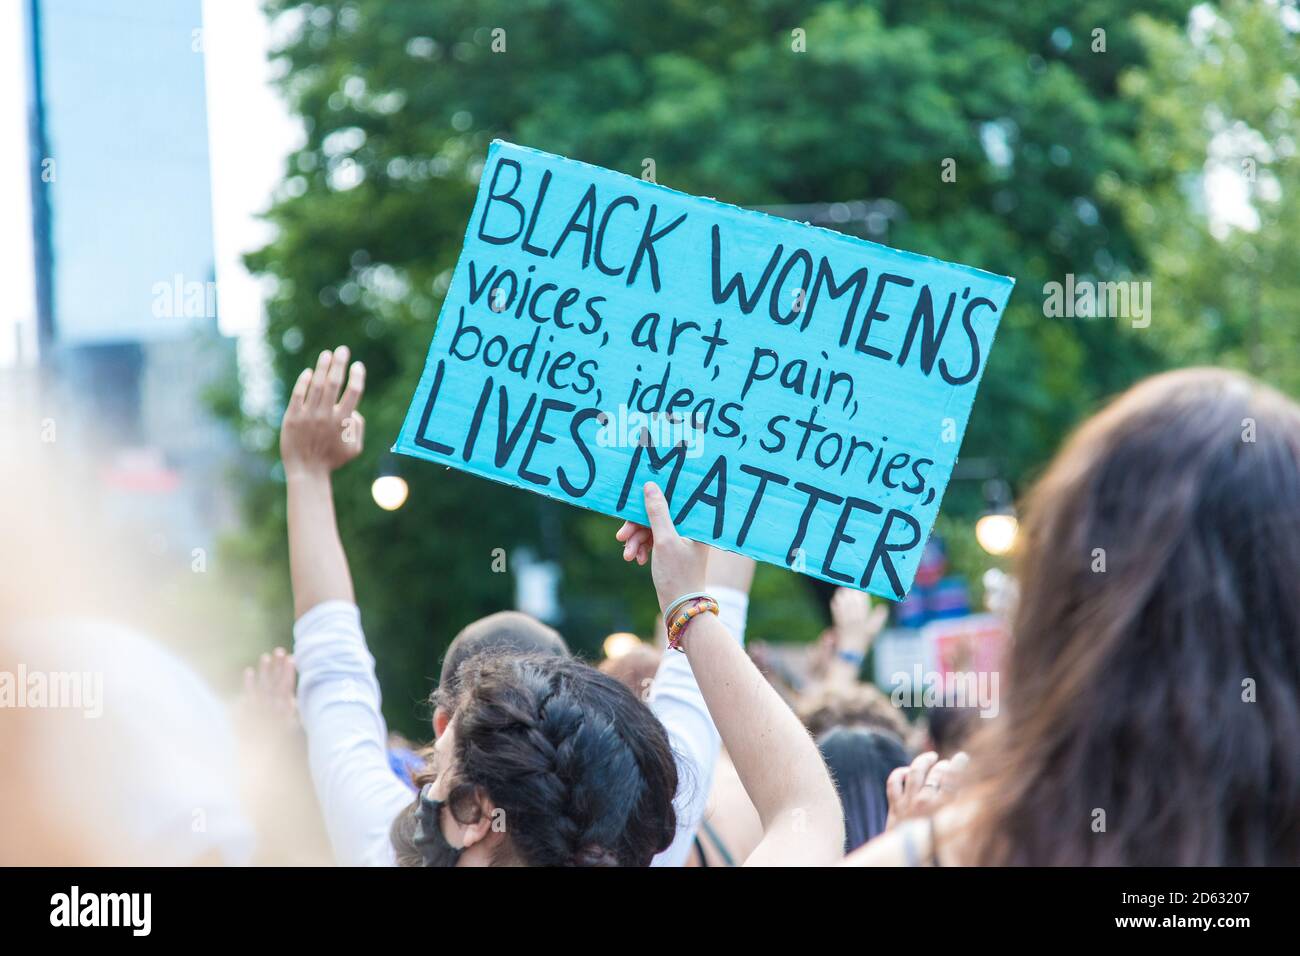 Femme protestant Holding Sign, Black Women's Lives Matter, au cours du dix-septième mars, New York City, New York, États-Unis Banque D'Images